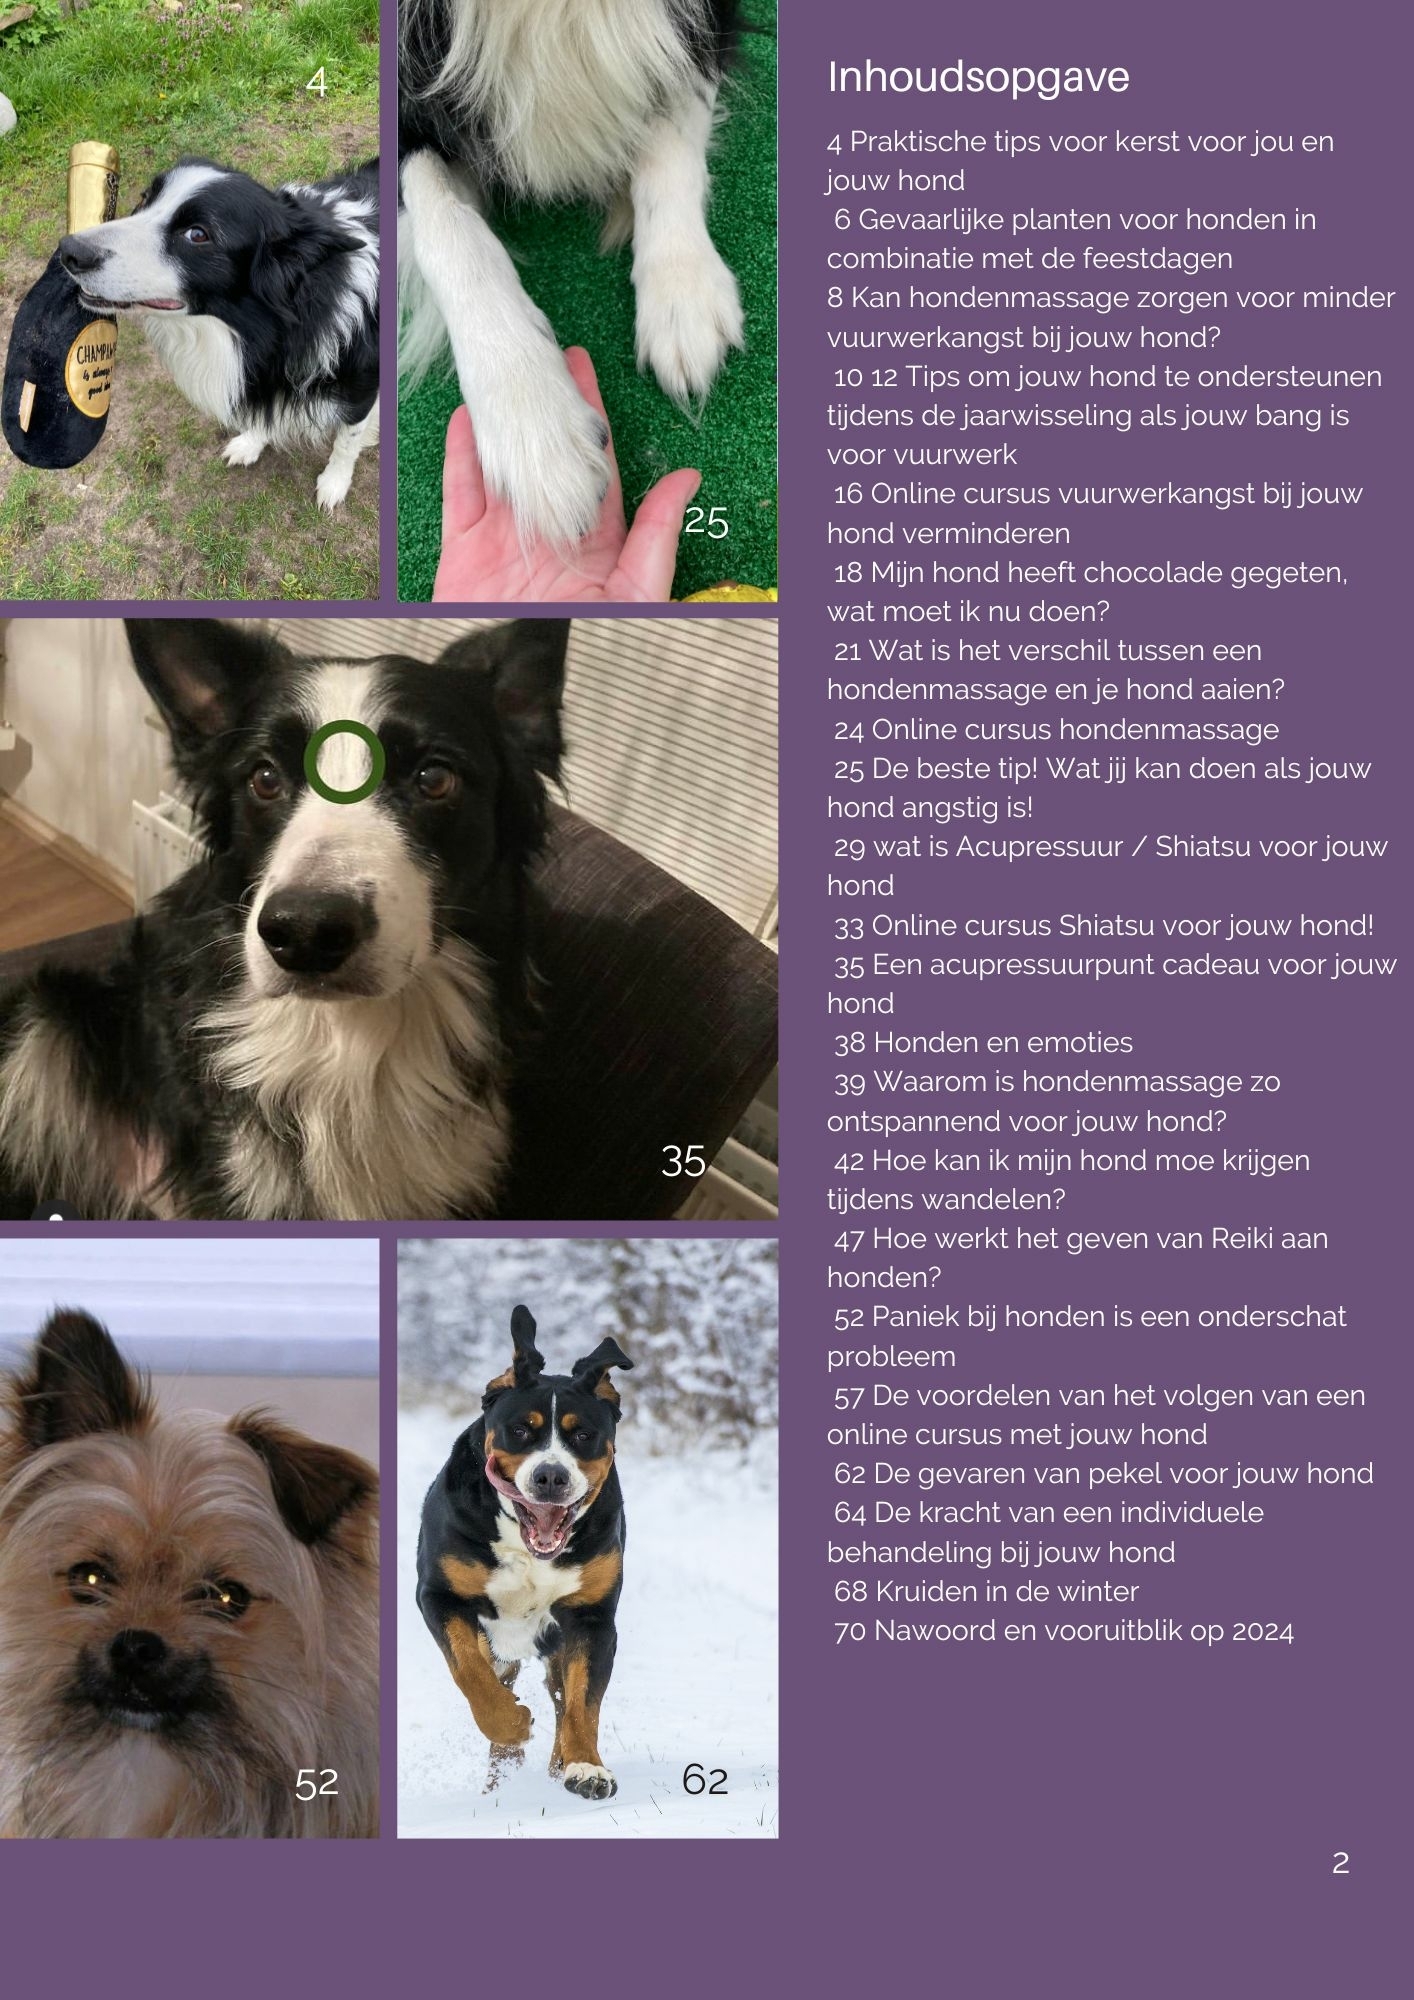 Inhoudsopgave gratis online e-magazine van Online met je hond met tips voor honden